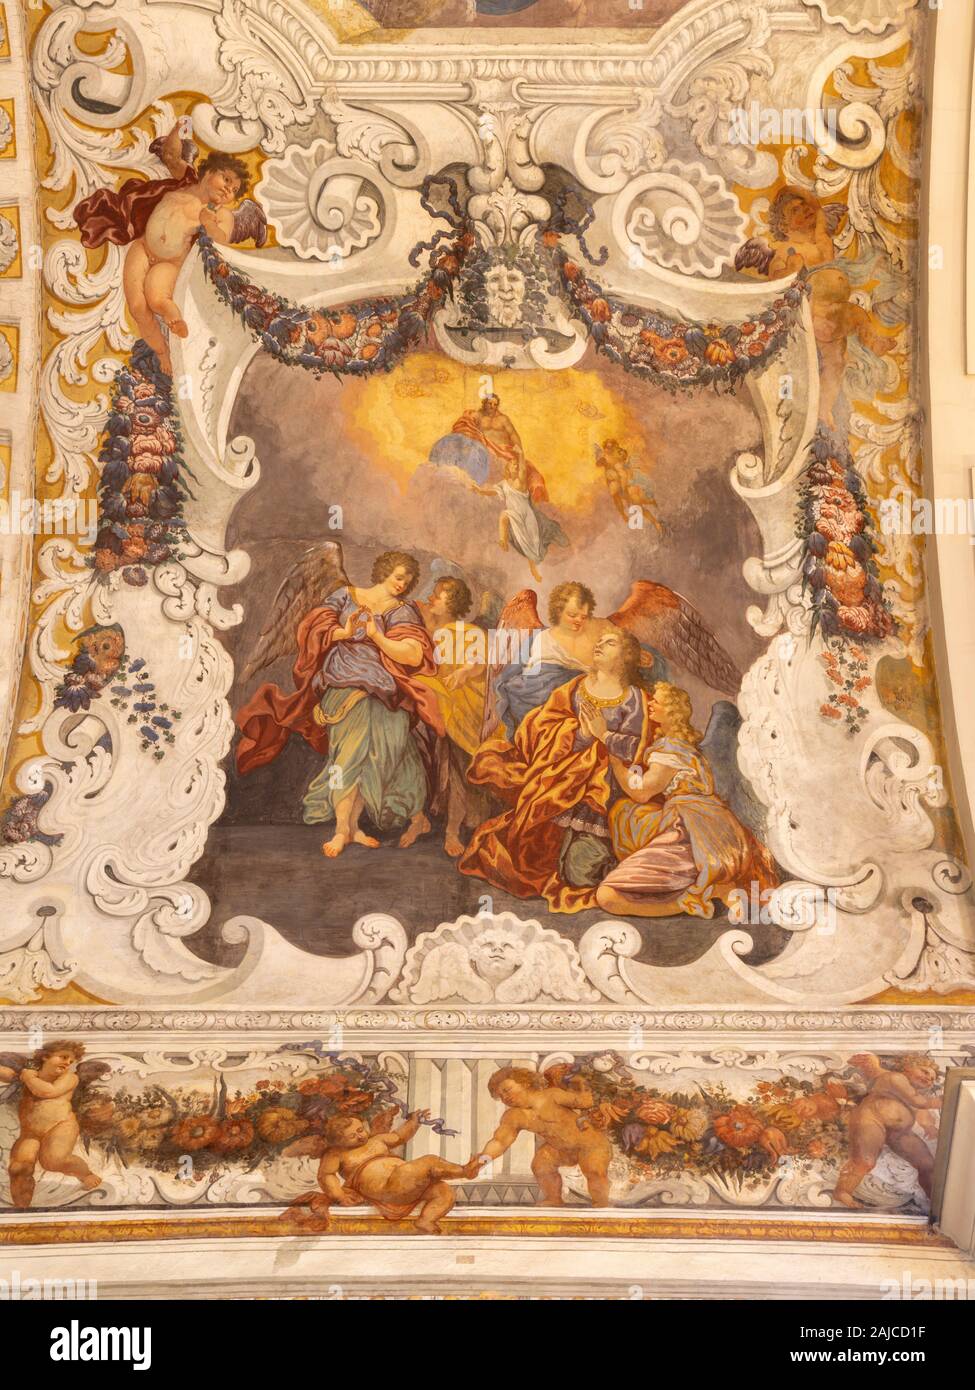 CATANIA, ITALY - APRIL 8, 2018: The detail glory of Santa Agata fresco from presbytery in church Chiesa di Sant'Agata al Borgo by Giovanni Lo Coco. Stock Photo